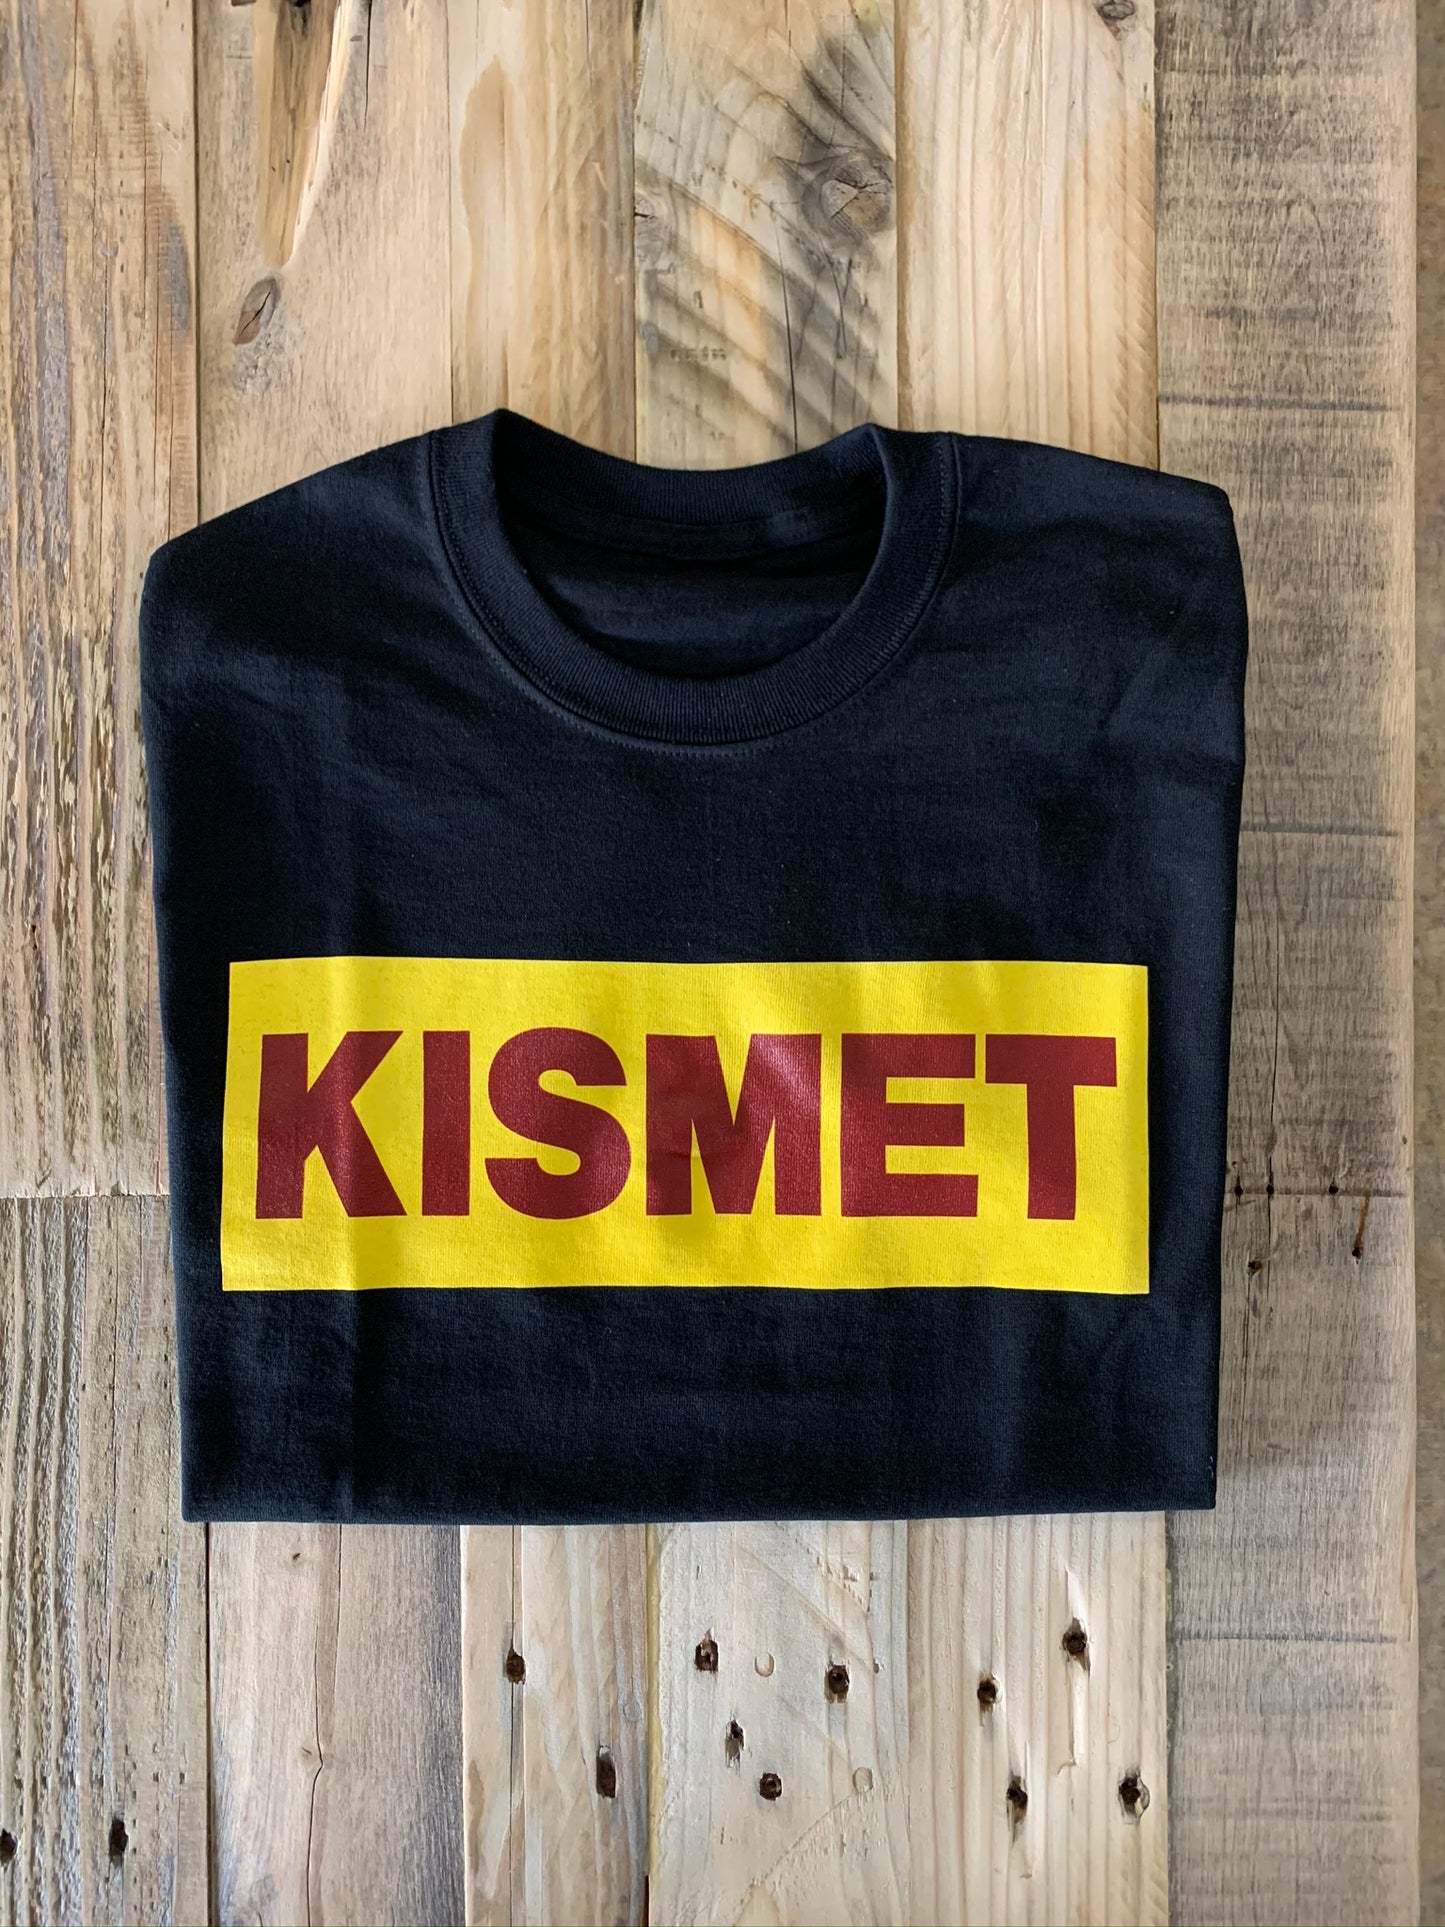 Kismet T-Shirt